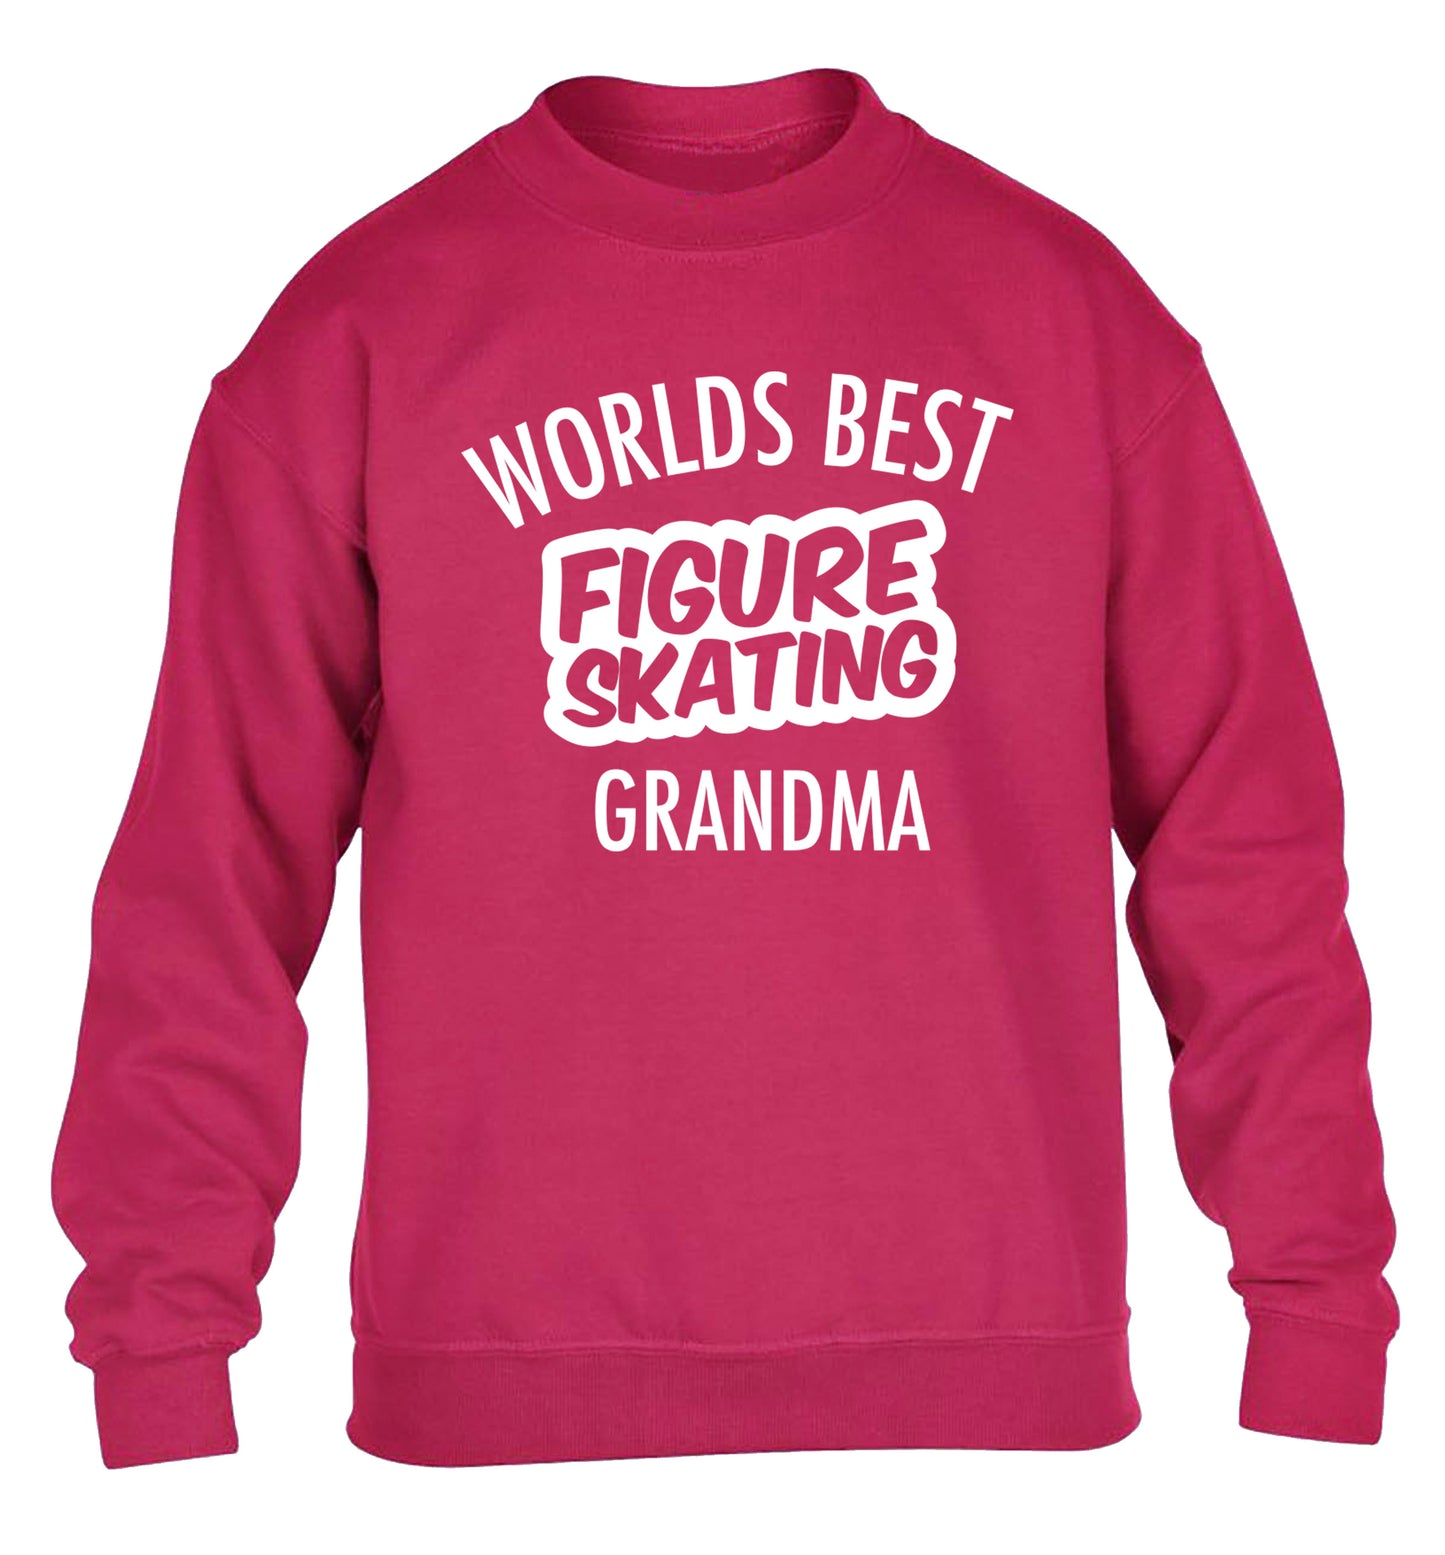 Worlds best figure skating grandma children's pink sweater 12-14 Years